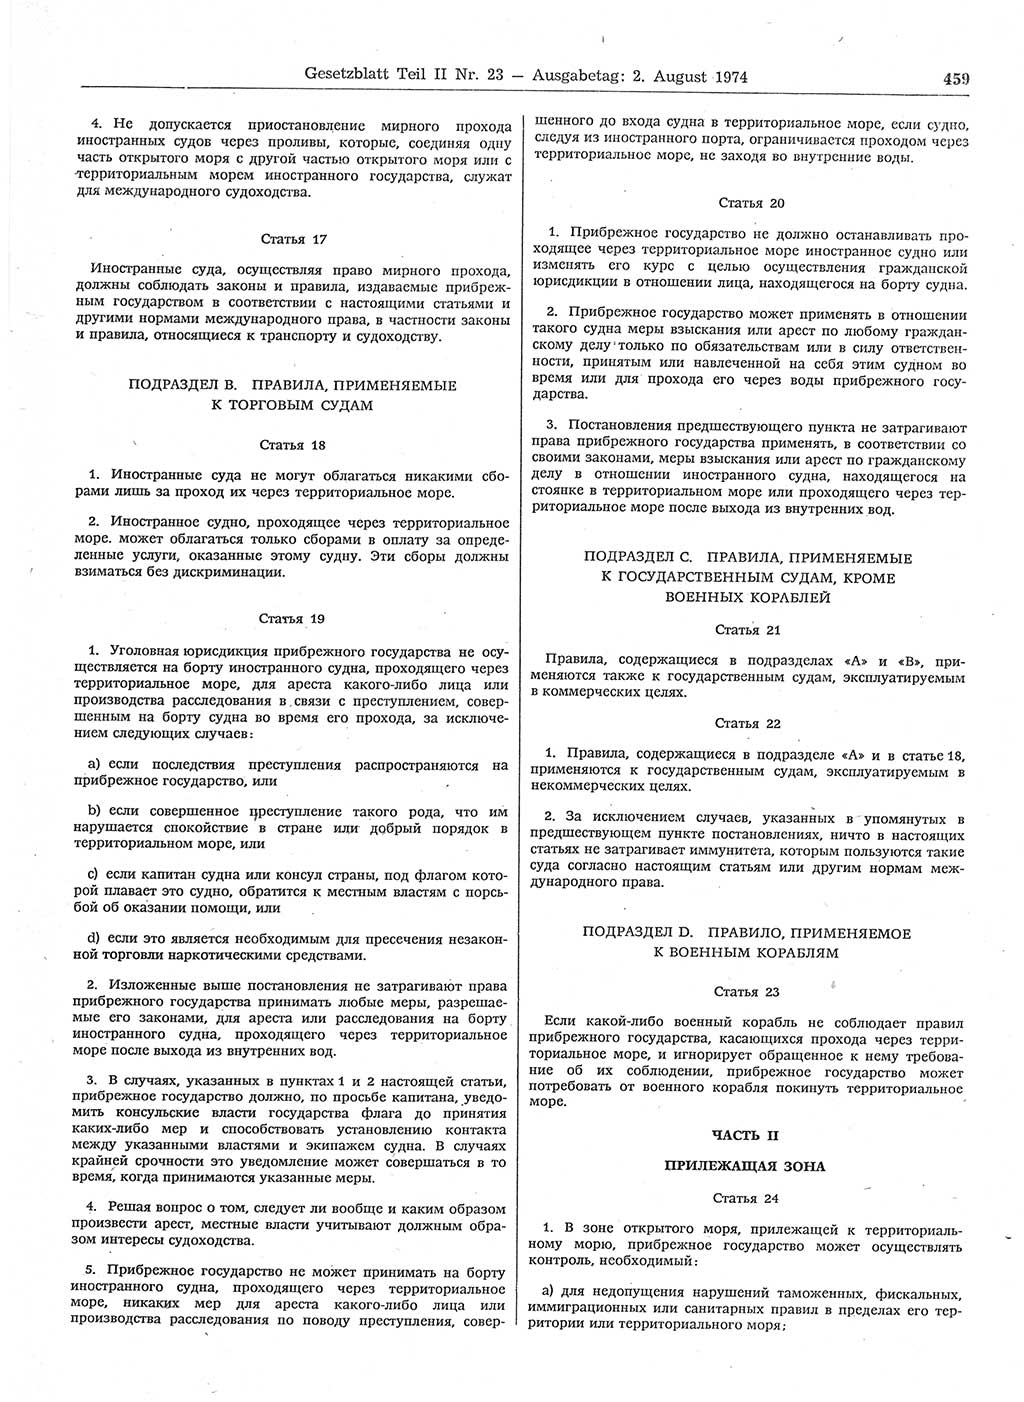 Gesetzblatt (GBl.) der Deutschen Demokratischen Republik (DDR) Teil ⅠⅠ 1974, Seite 459 (GBl. DDR ⅠⅠ 1974, S. 459)